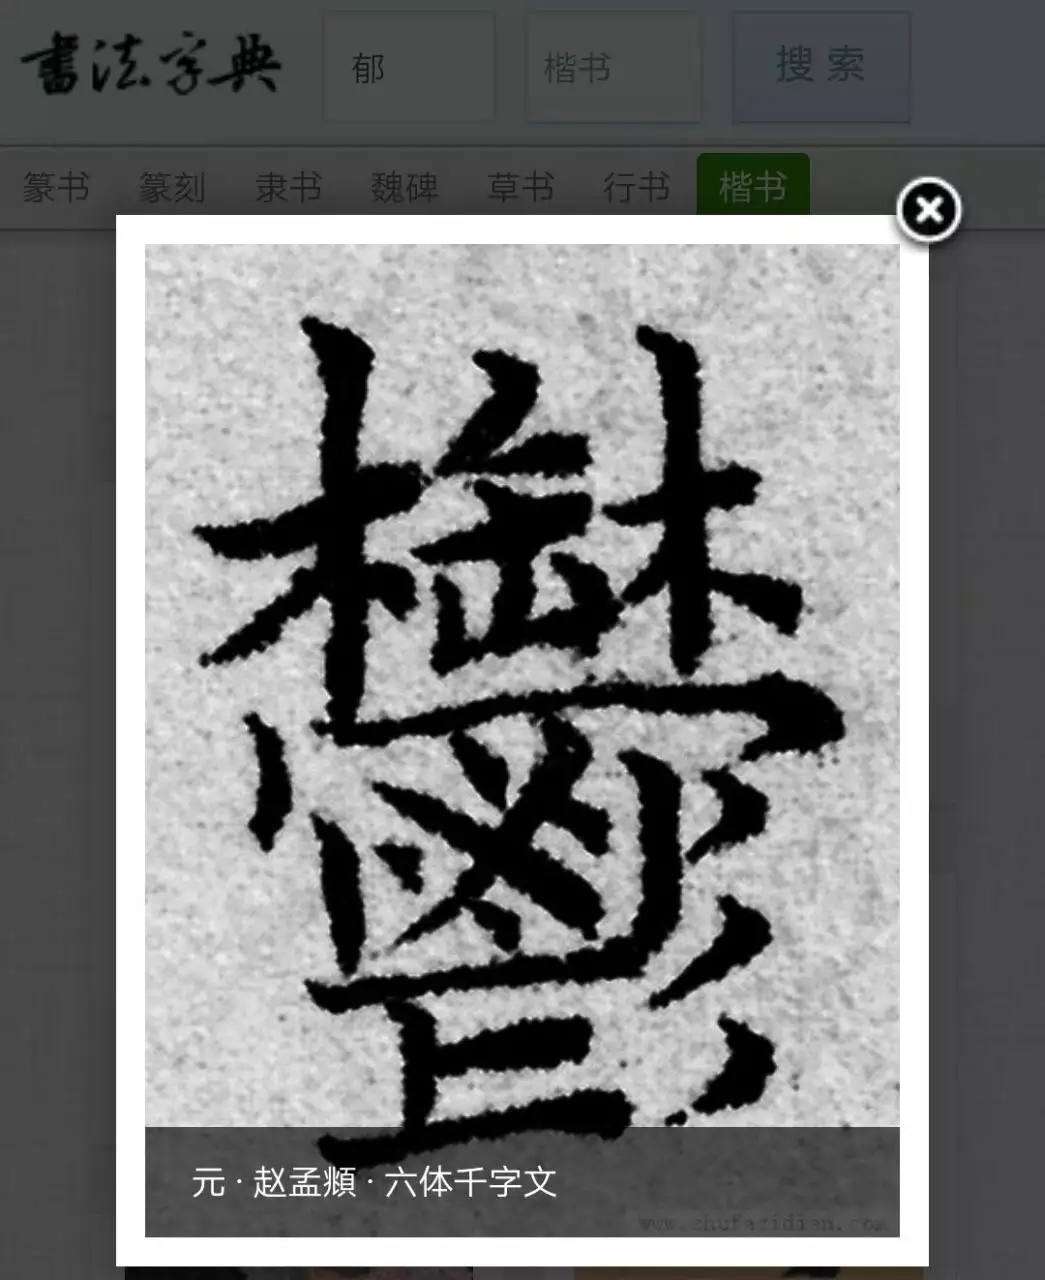 4、繁体字大全个最难写:中国最难写的繁体字是什么？简体字呢？